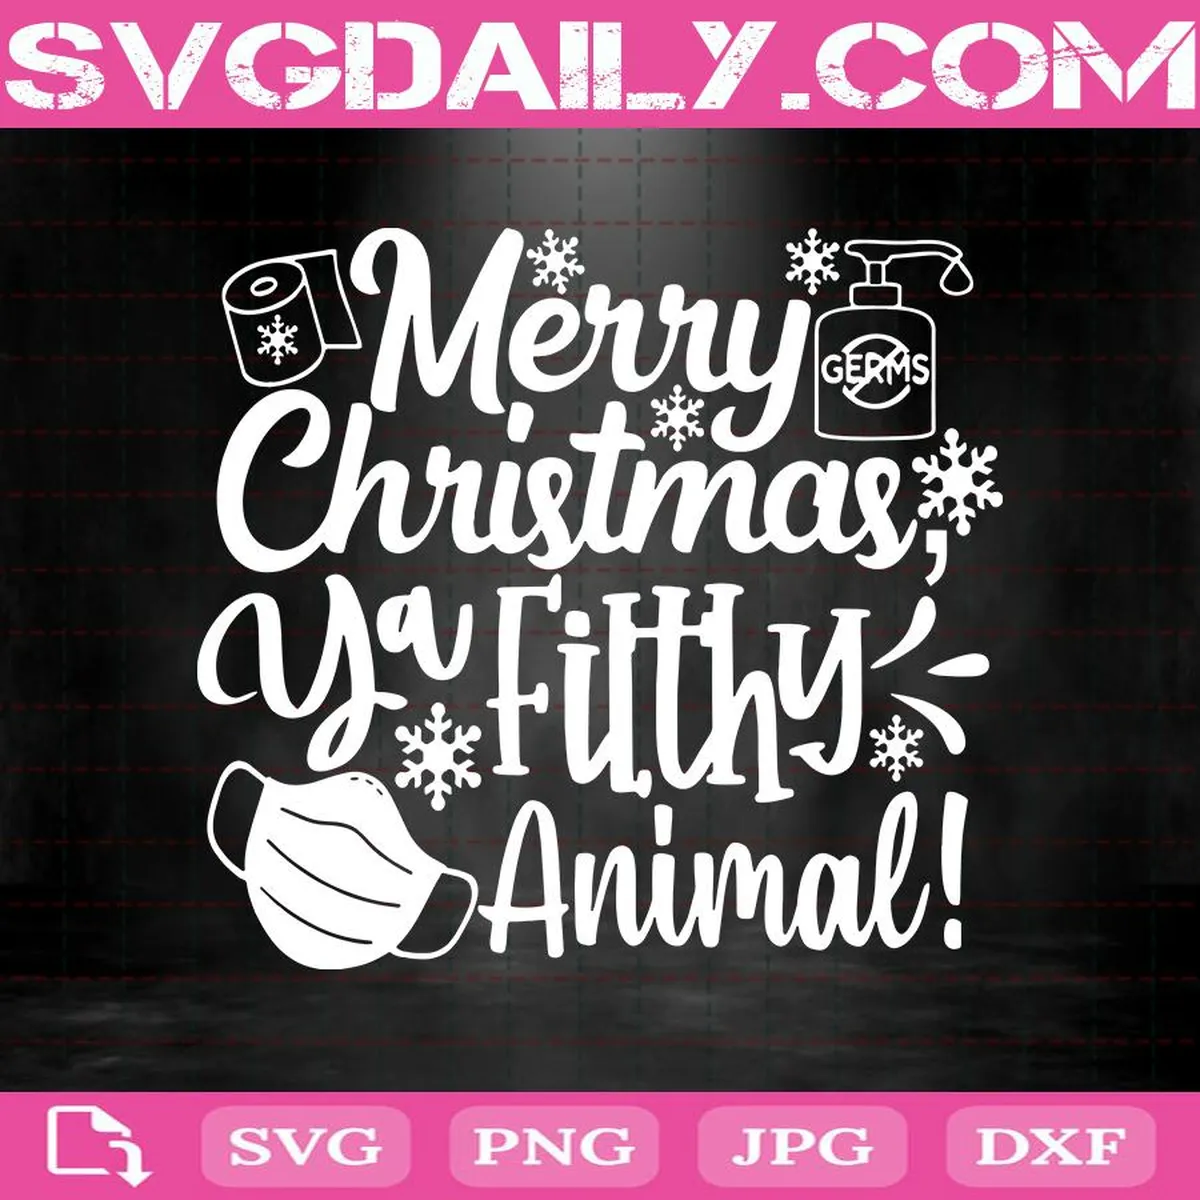 Merry Christmas Ya Filthy Animal Svg, Ya Filthy Animal Svg, Christmas Svg, Funny Christmas Svg, Merry Christmas Svg